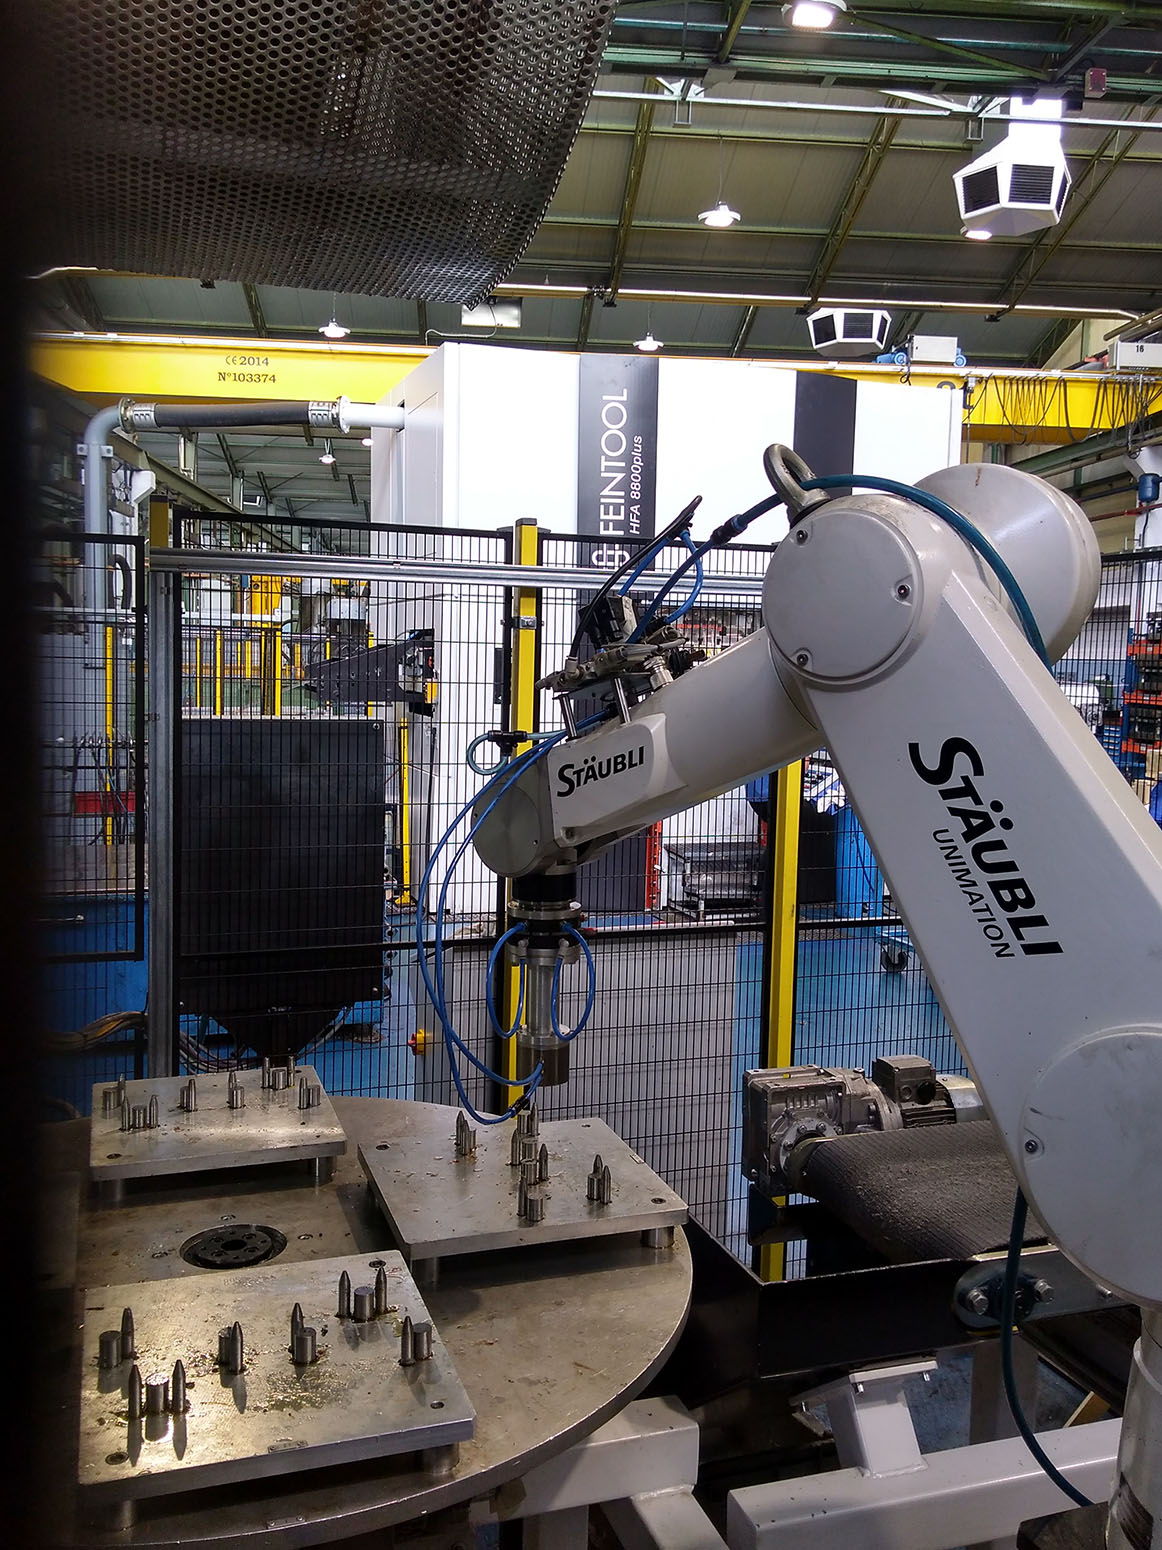 Jovi Automatismos fabrica sistemas para seleccionar y extraer piezas aleatoriamente de un contenedor, usamos sistemas robóticos guiados por visión artificial para nuestro Bin Picking o Random Bin Picking